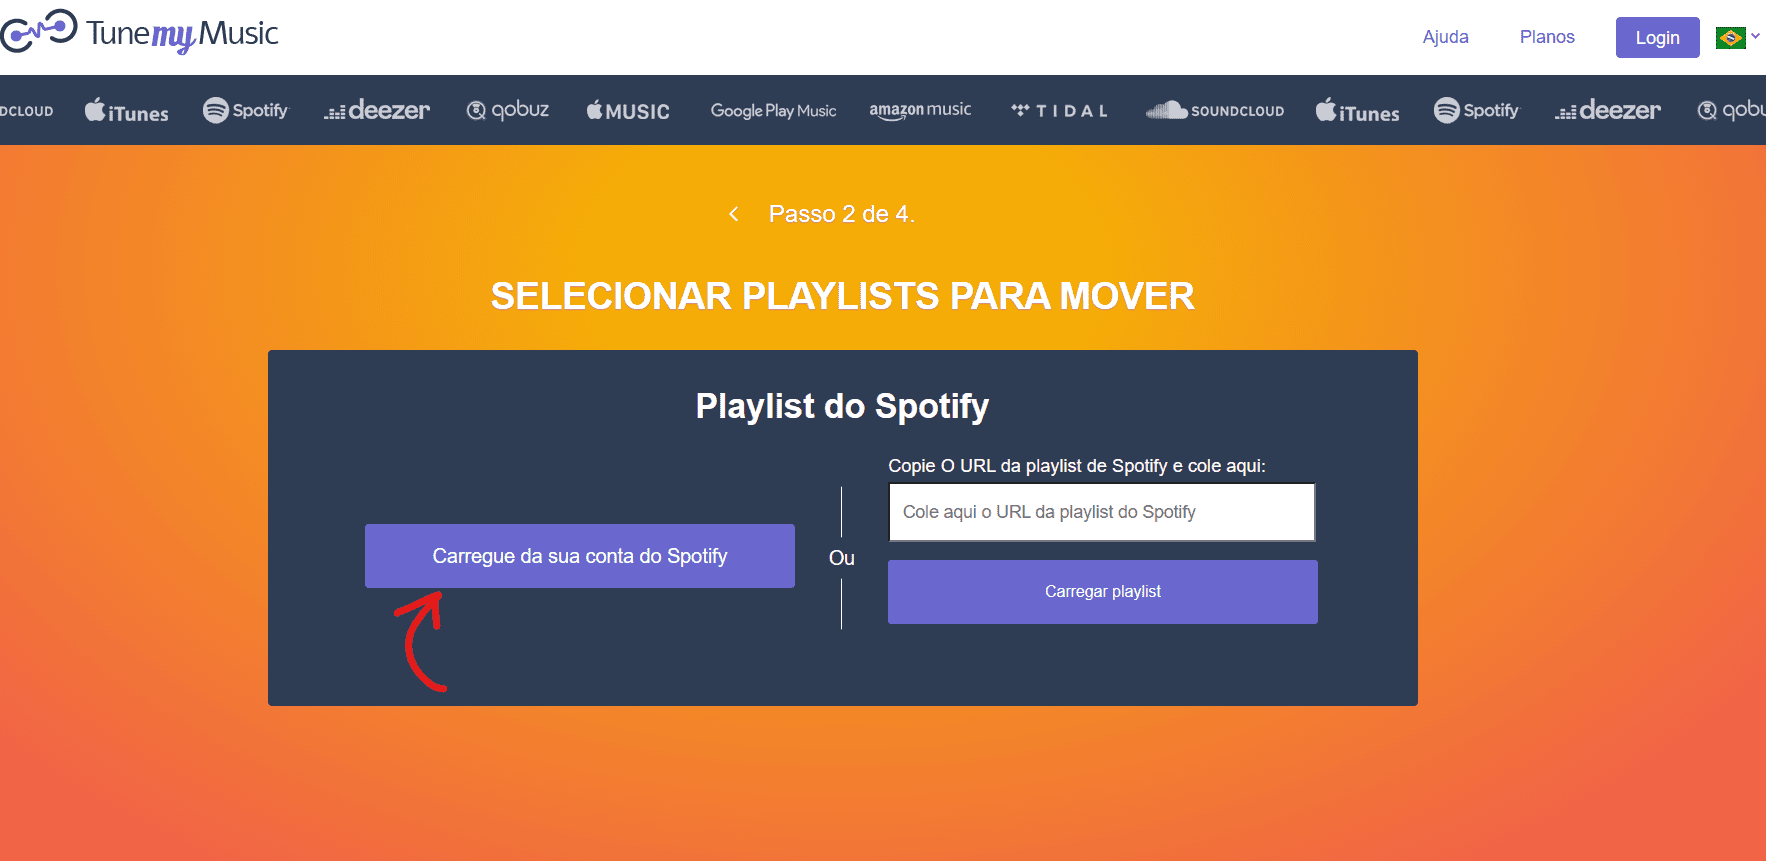 Clique em Carregue da sua conta do Spotify - Como migrar Playlists do Spotify para o YouTube Music